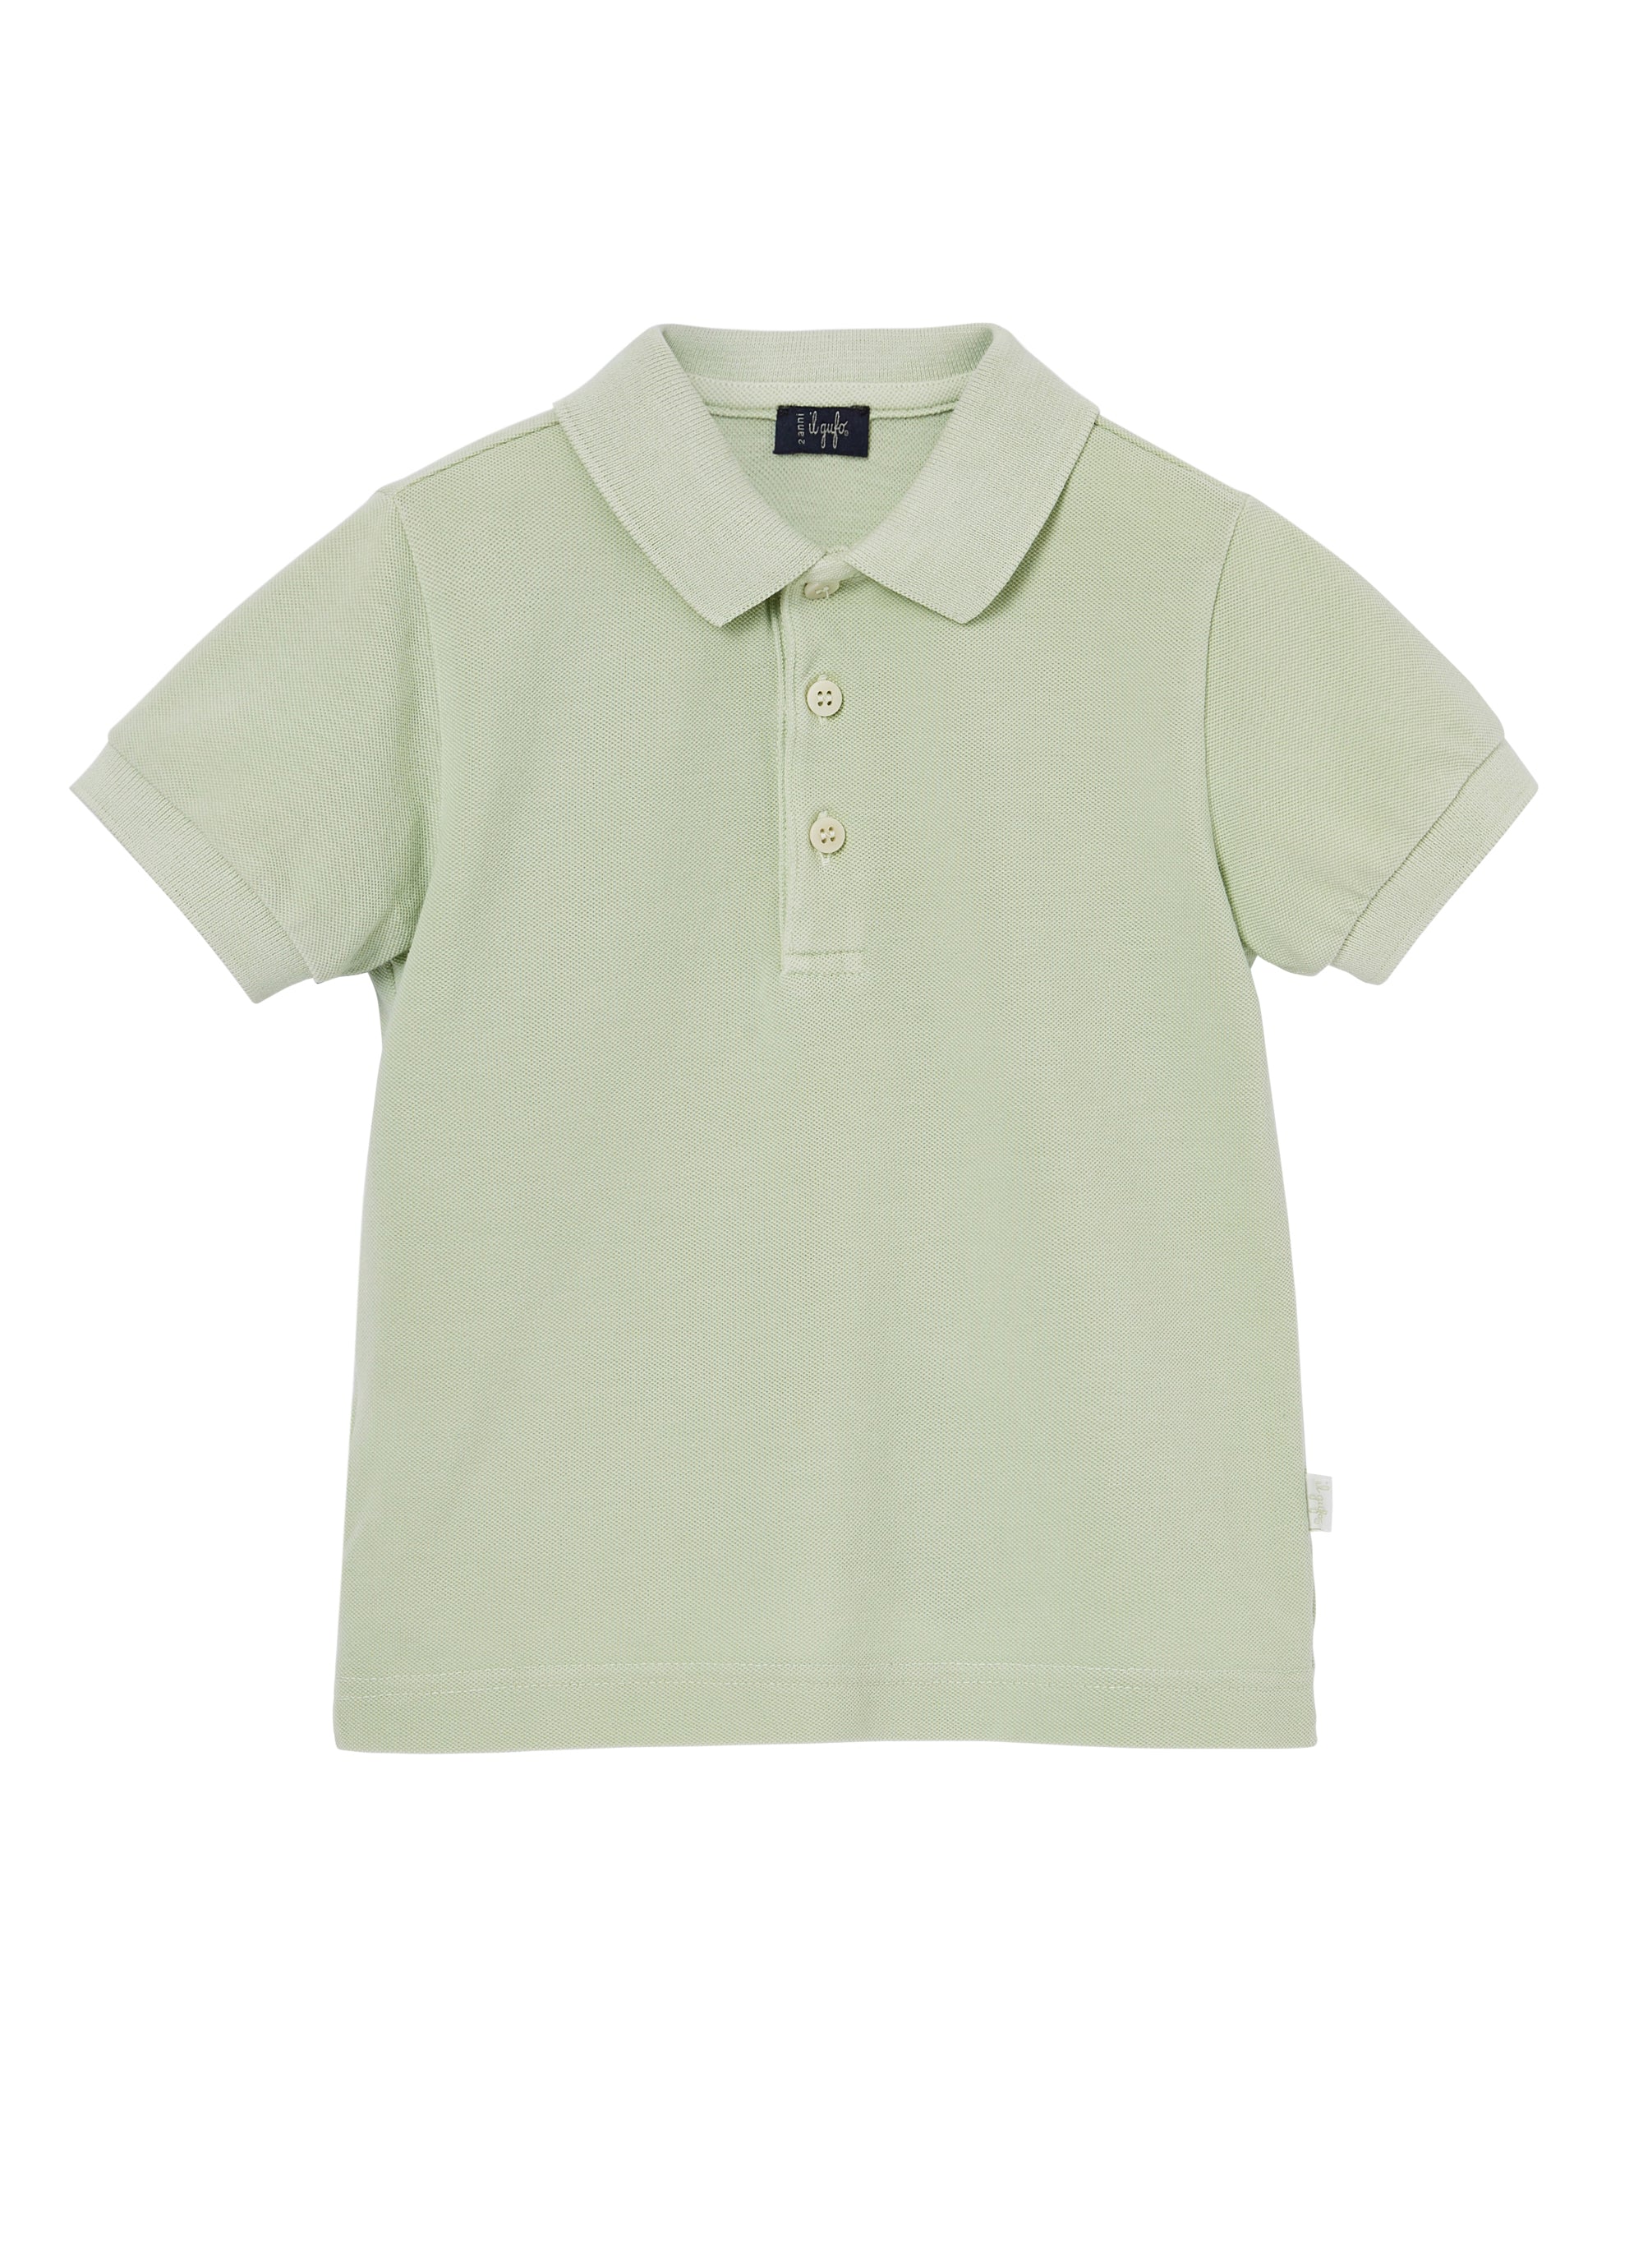 Boys Green Cotton Polo Shirt